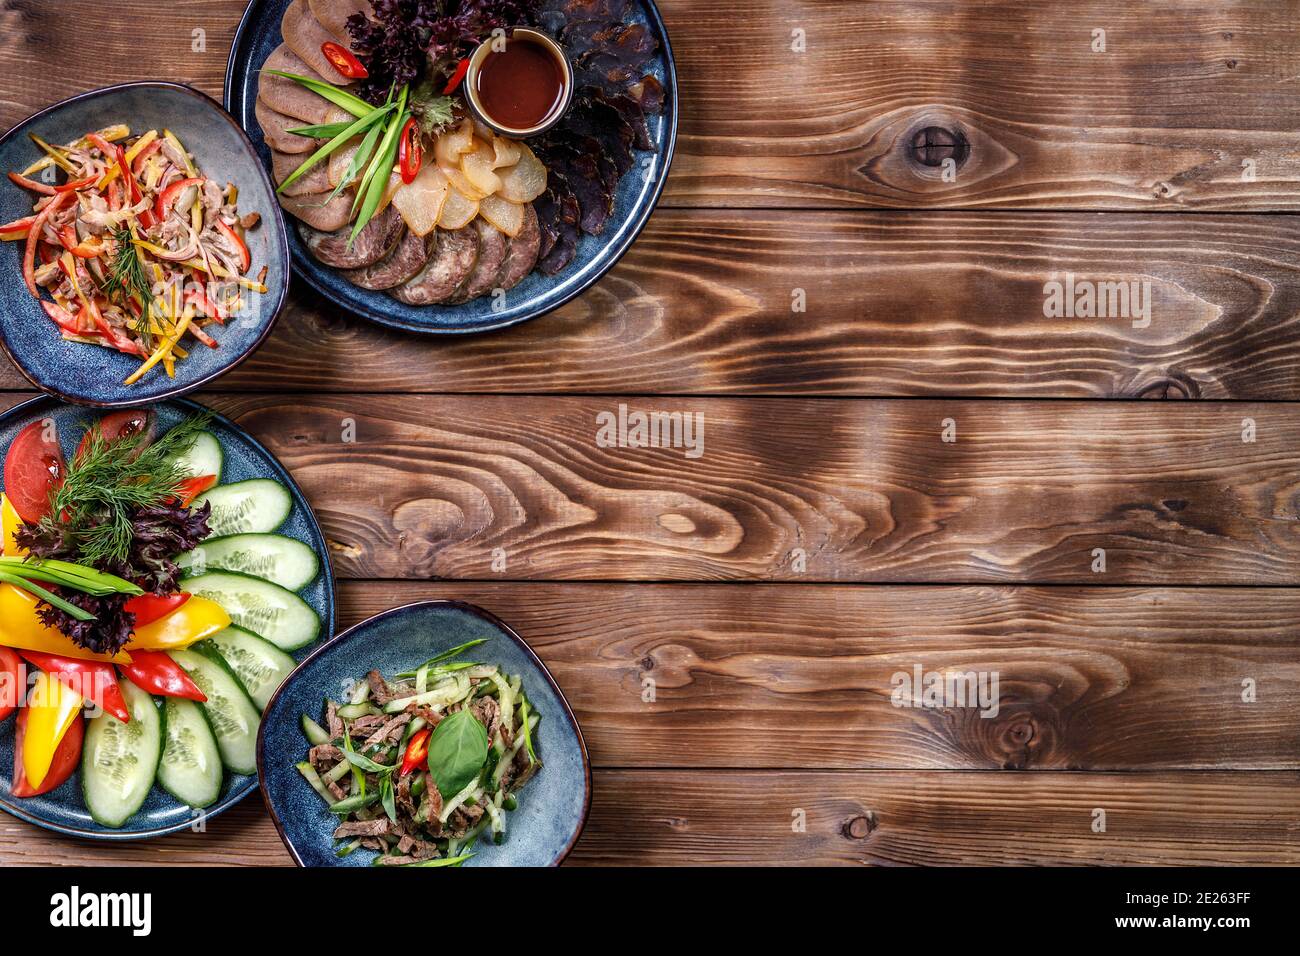 Disposizione piatta di vari piatti con verdure a fette, tagli di carne, insalate su fondo di legno marrone. Spazio di copia. Foto Stock